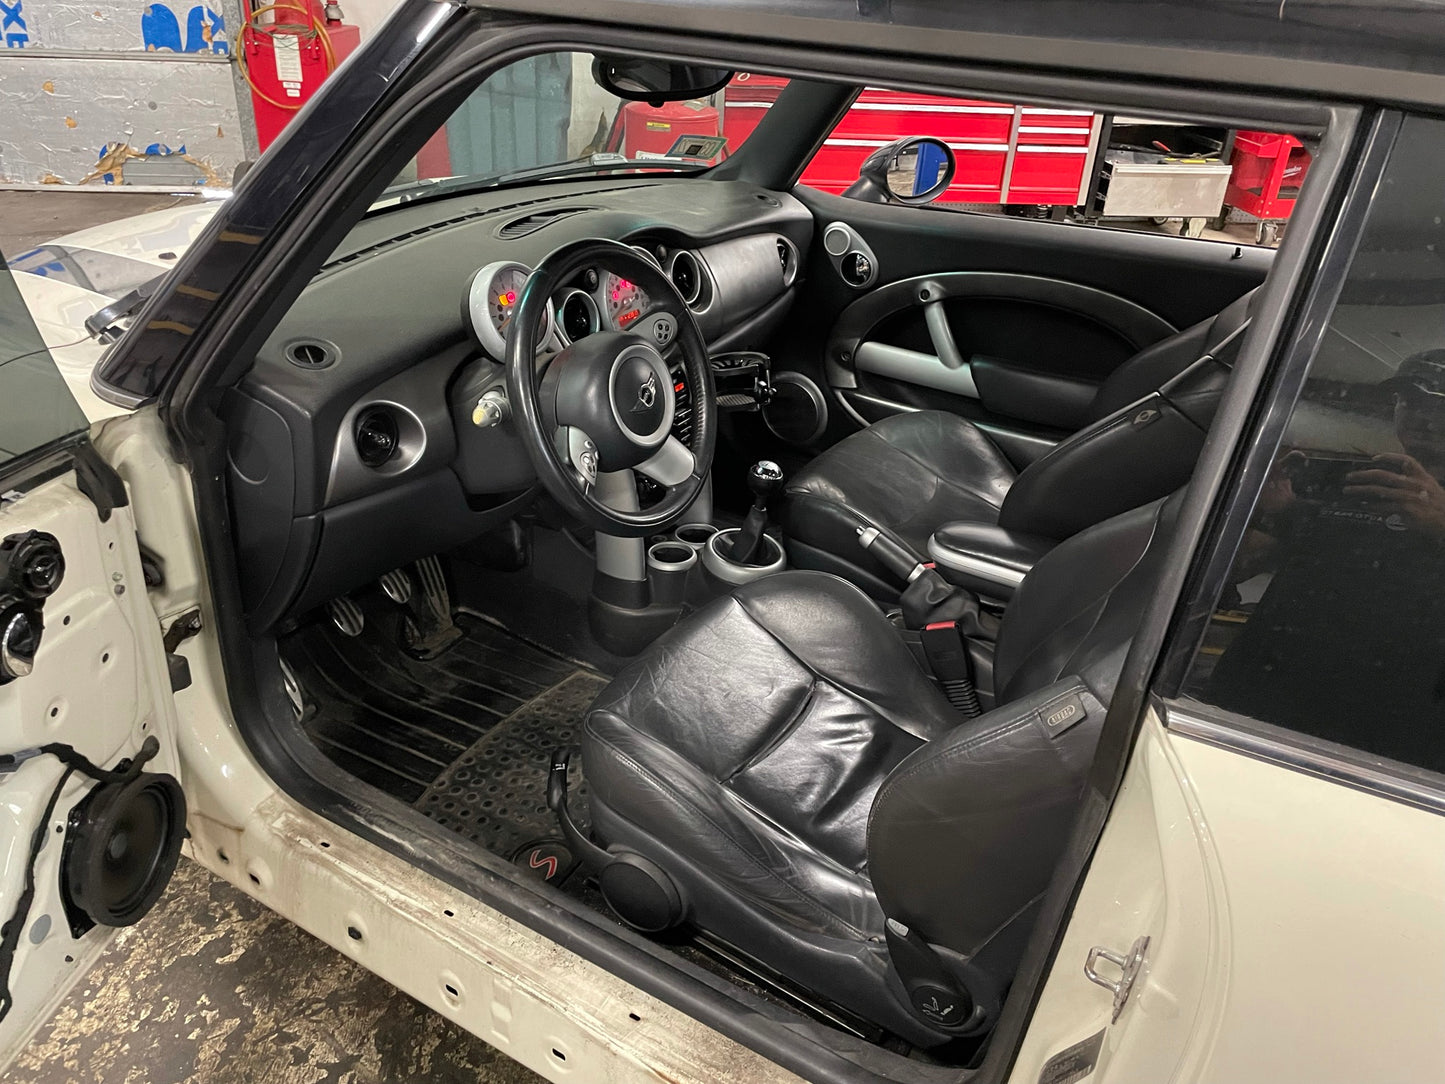 2005 MINI Cooper Hatchback S, New Parts Car (September 2021) Stk # 258